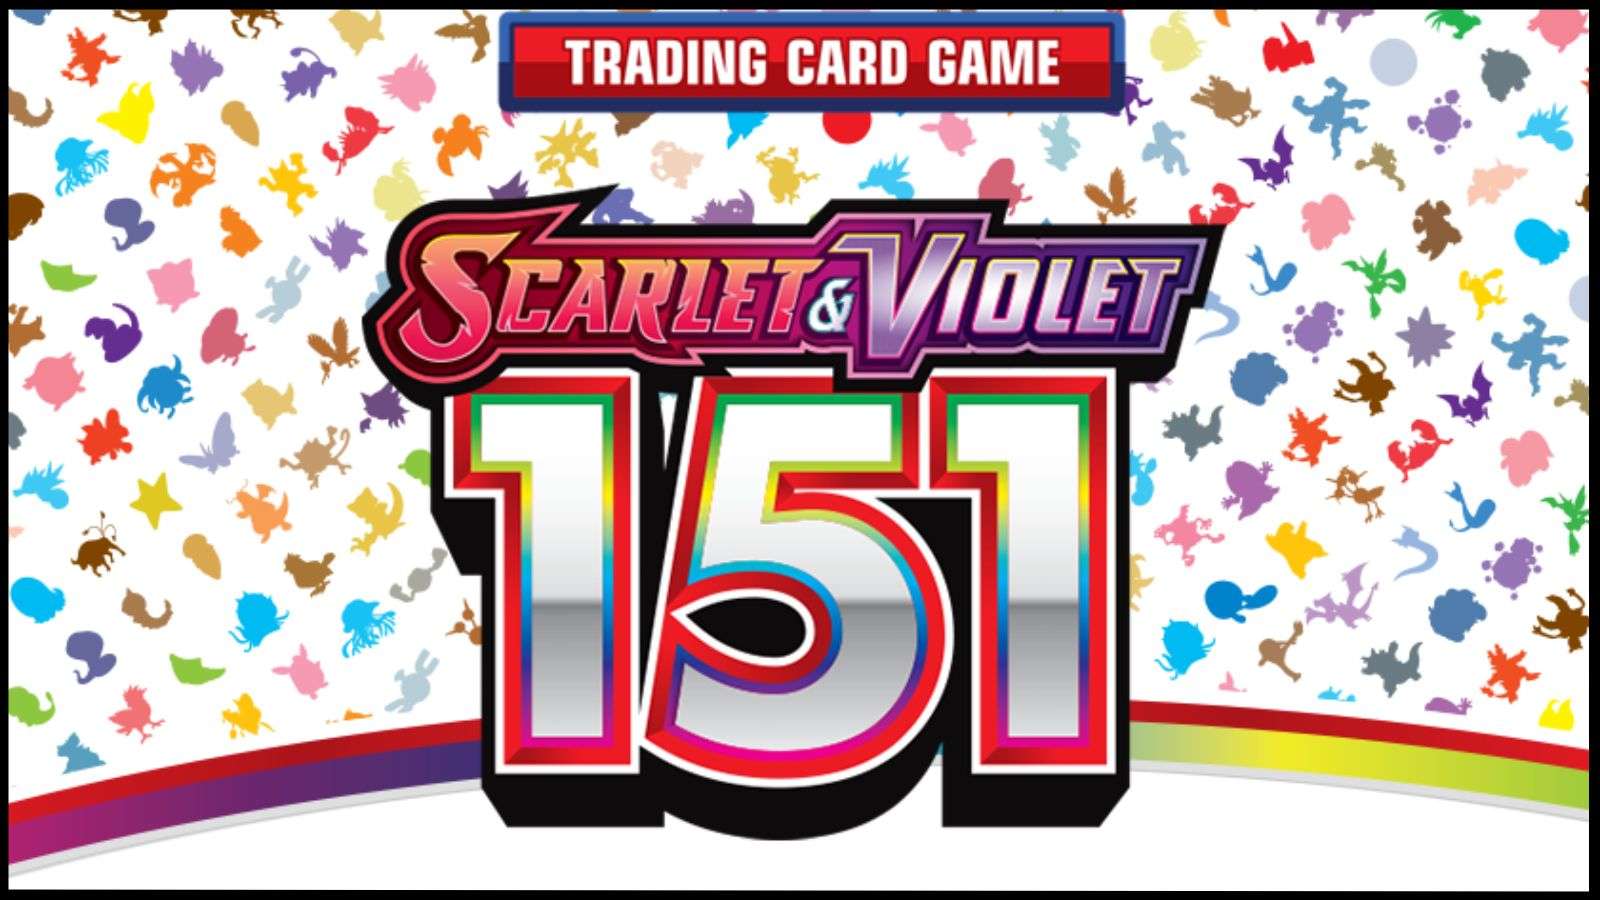 Pokemon Scarlet & Violet 151 TCG Expansion set: Release date, new